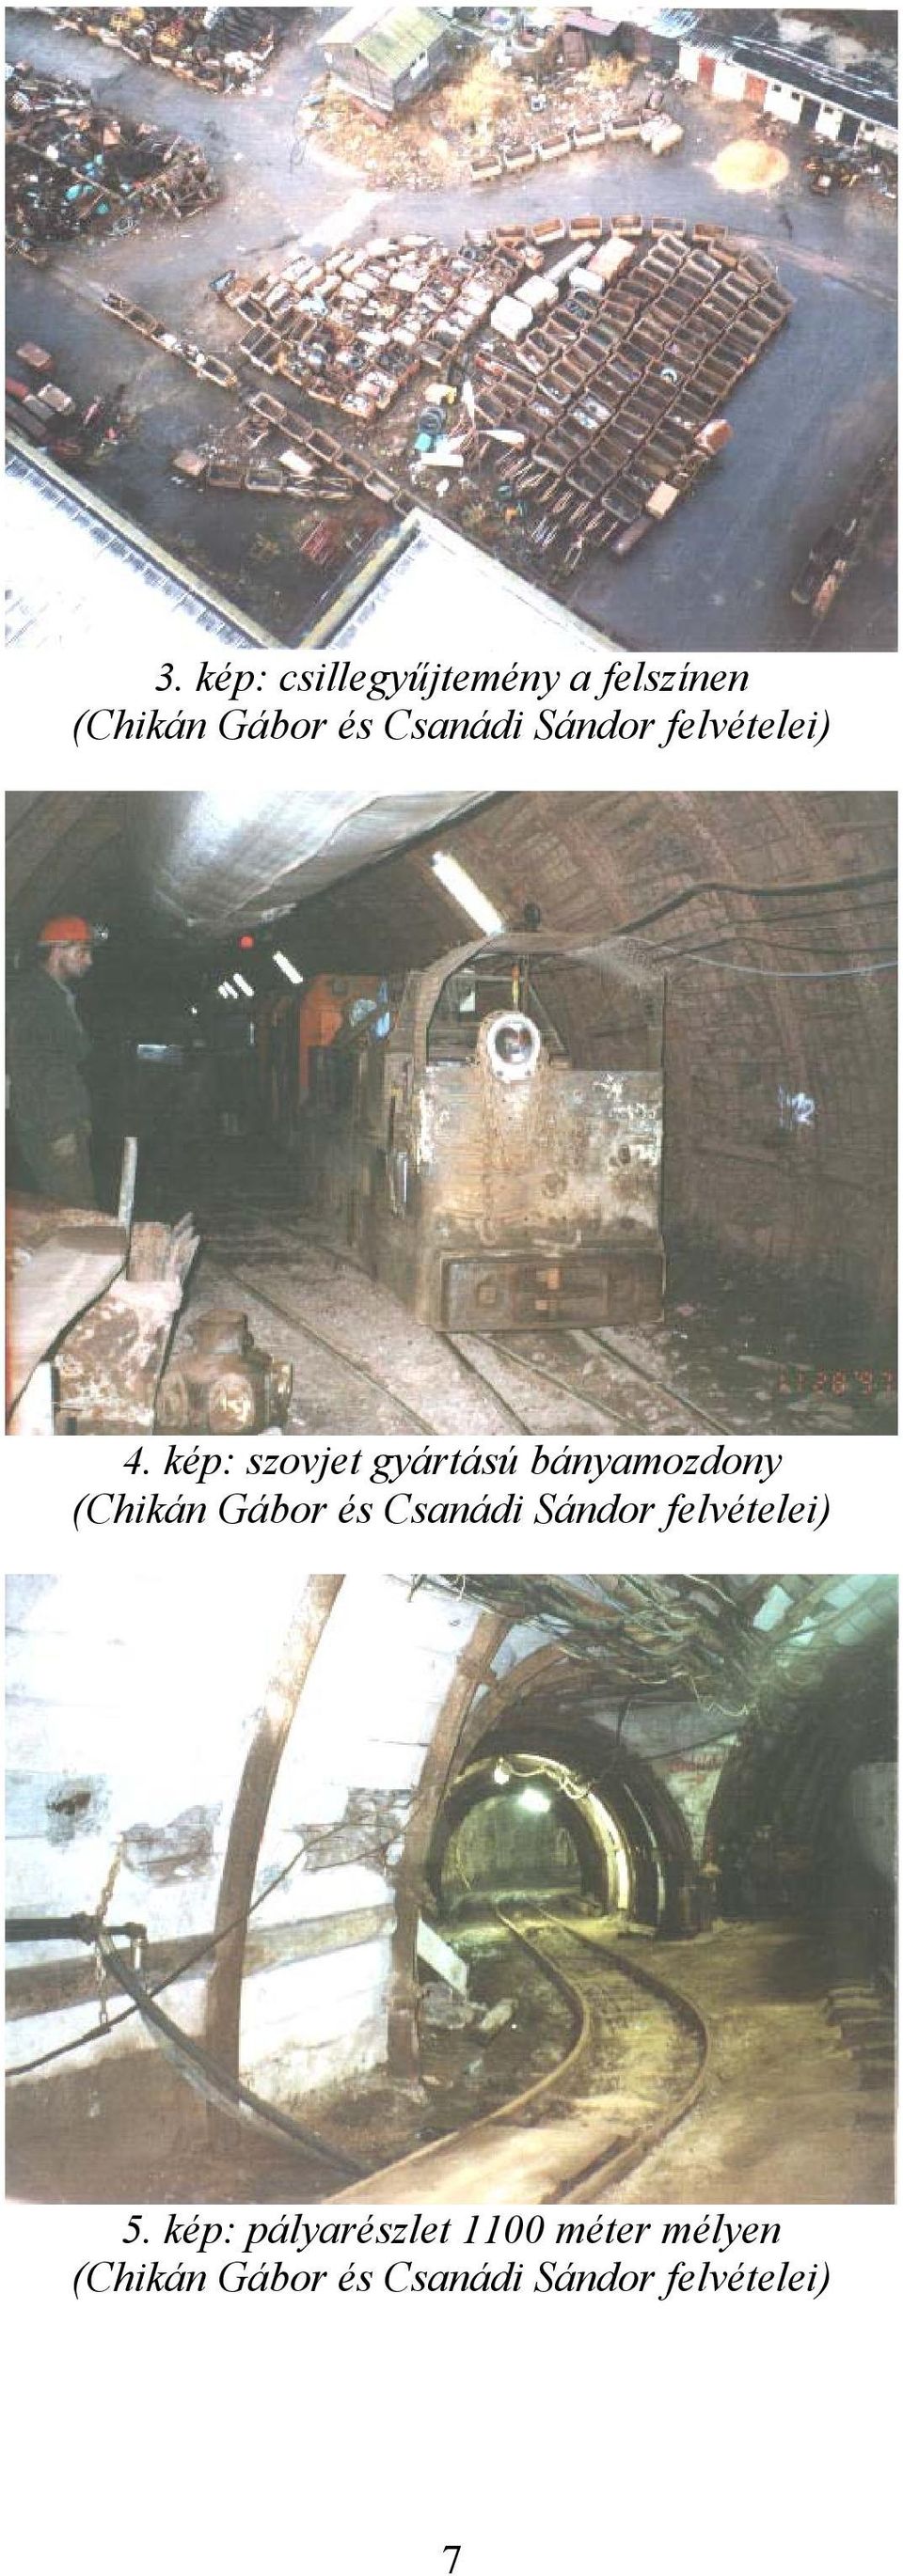 kép: szovjet gyártású bányamozdony (Chikán Gábor és Csanádi